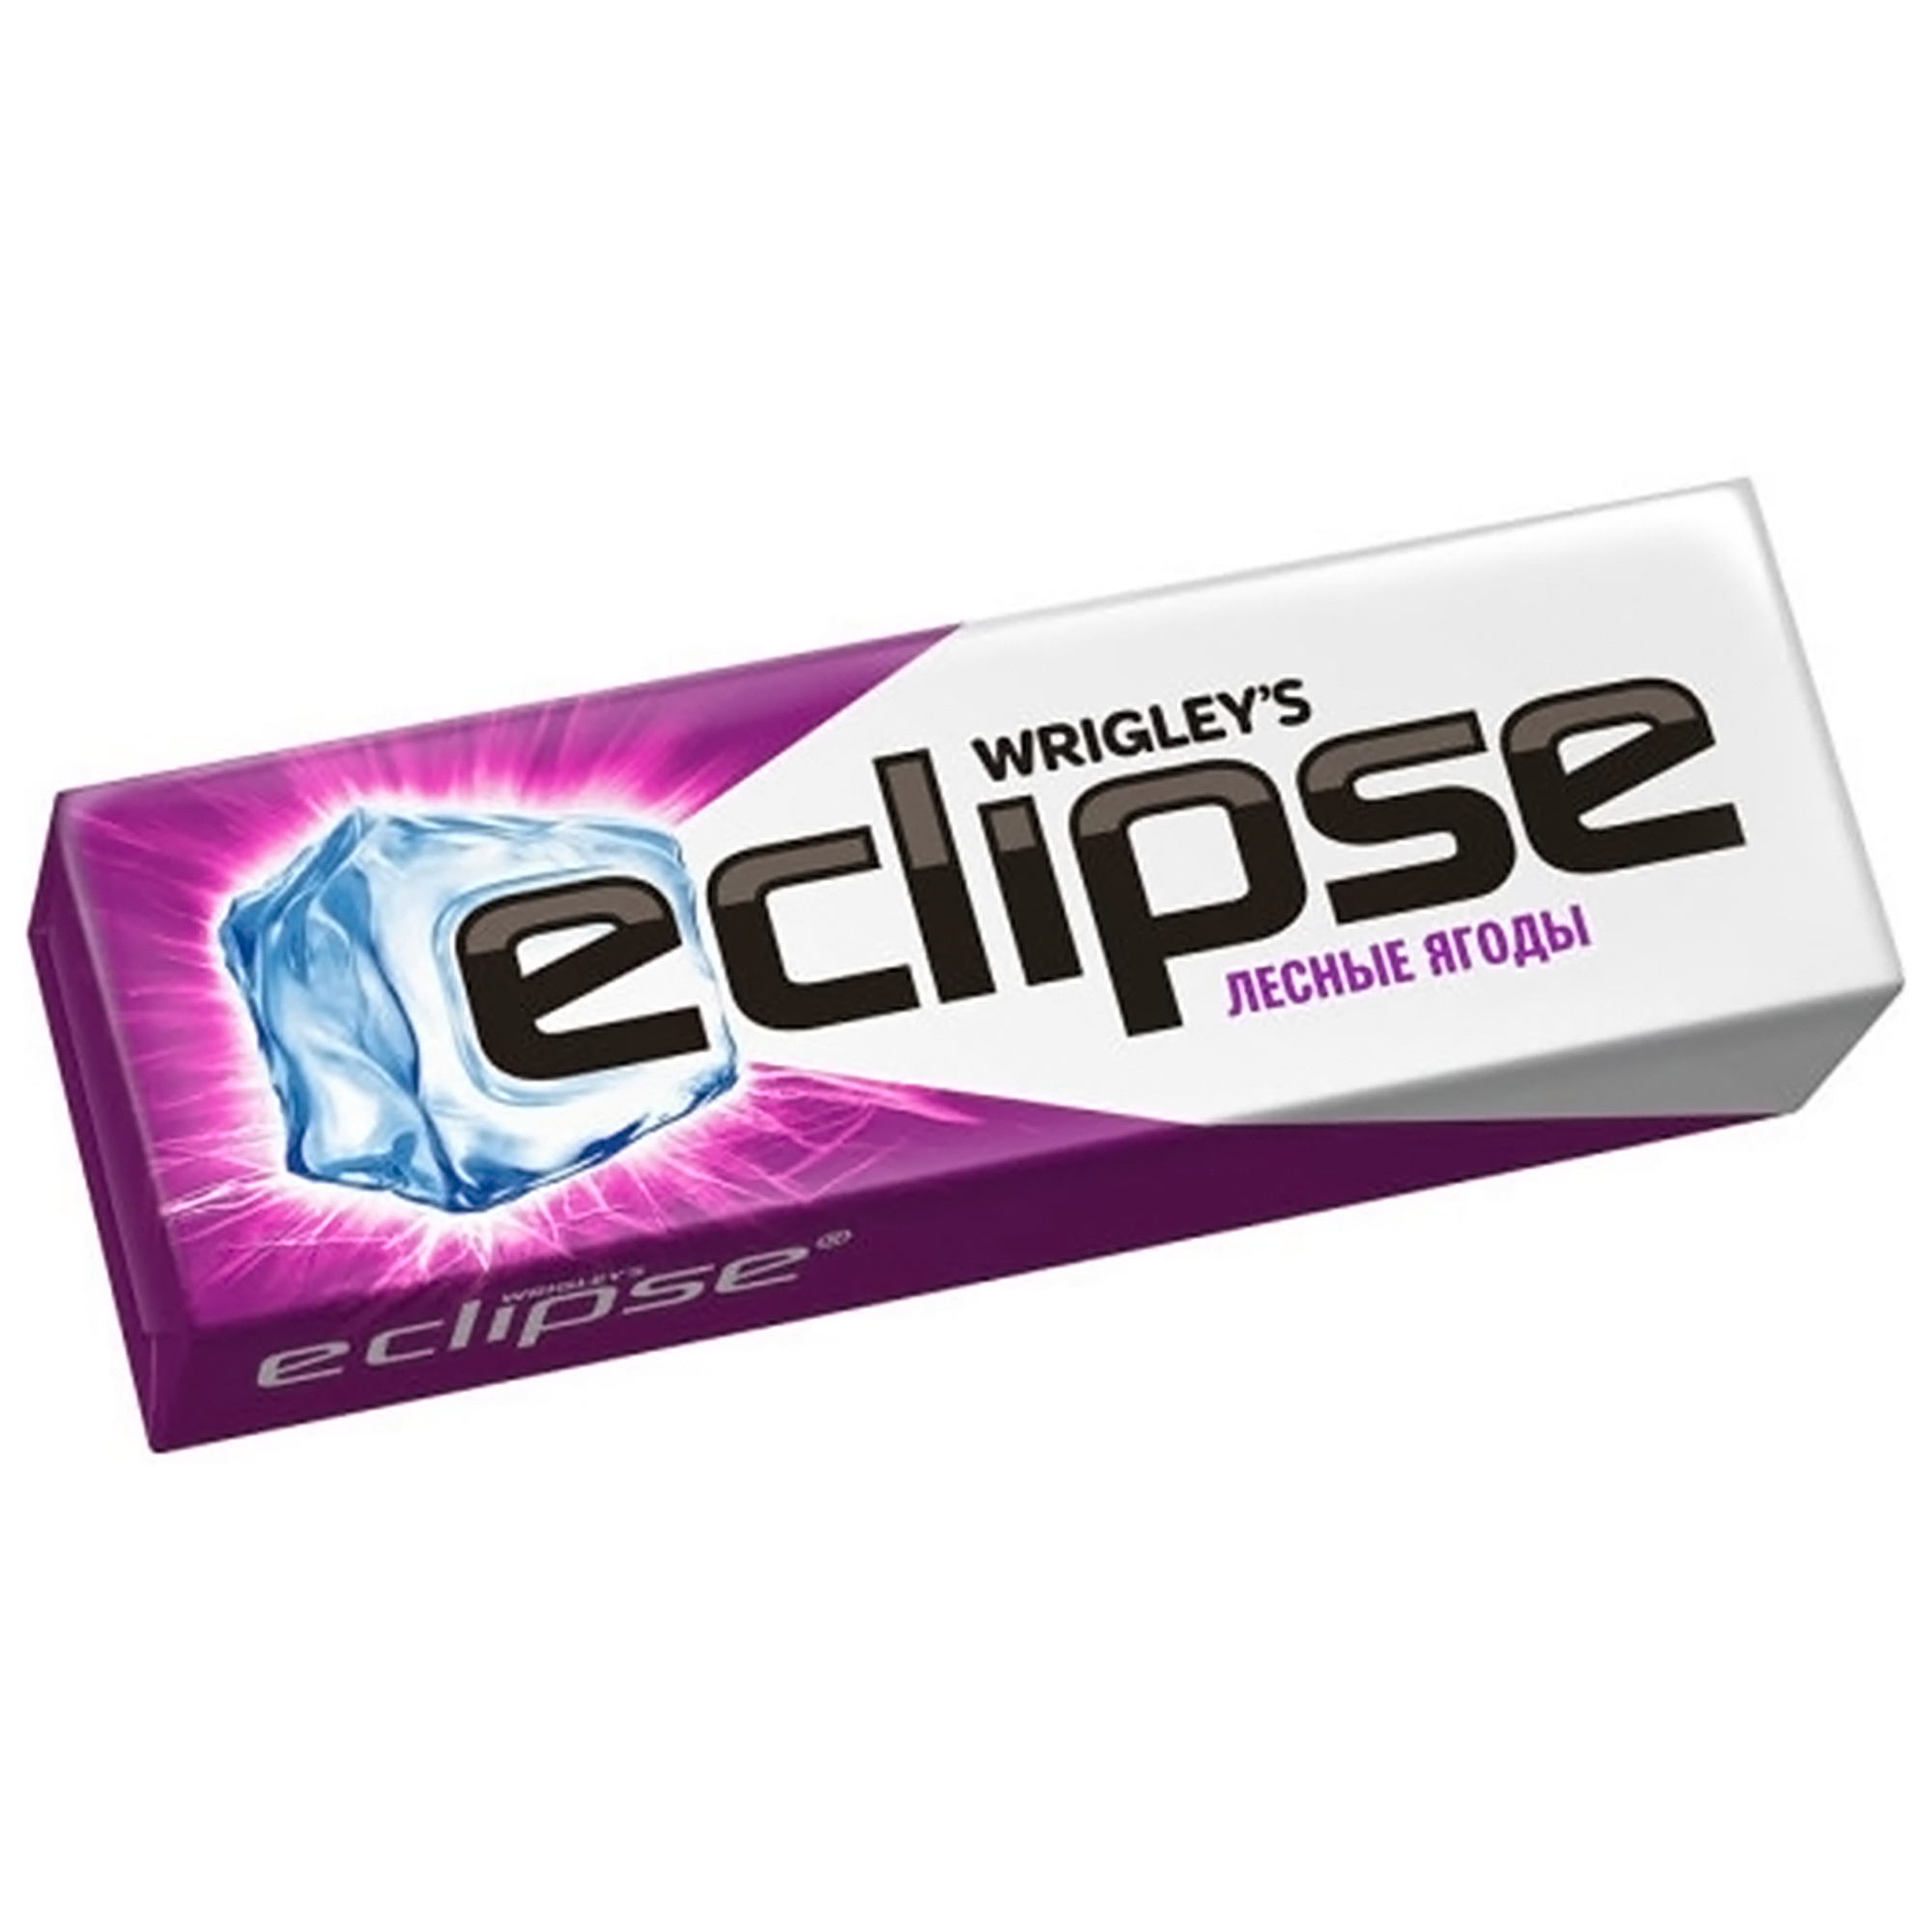 Жевательная резинка Eclipse Ледяные ягоды, 13,6 г без бренда жевательная резинка ледяная свежесть eclipse